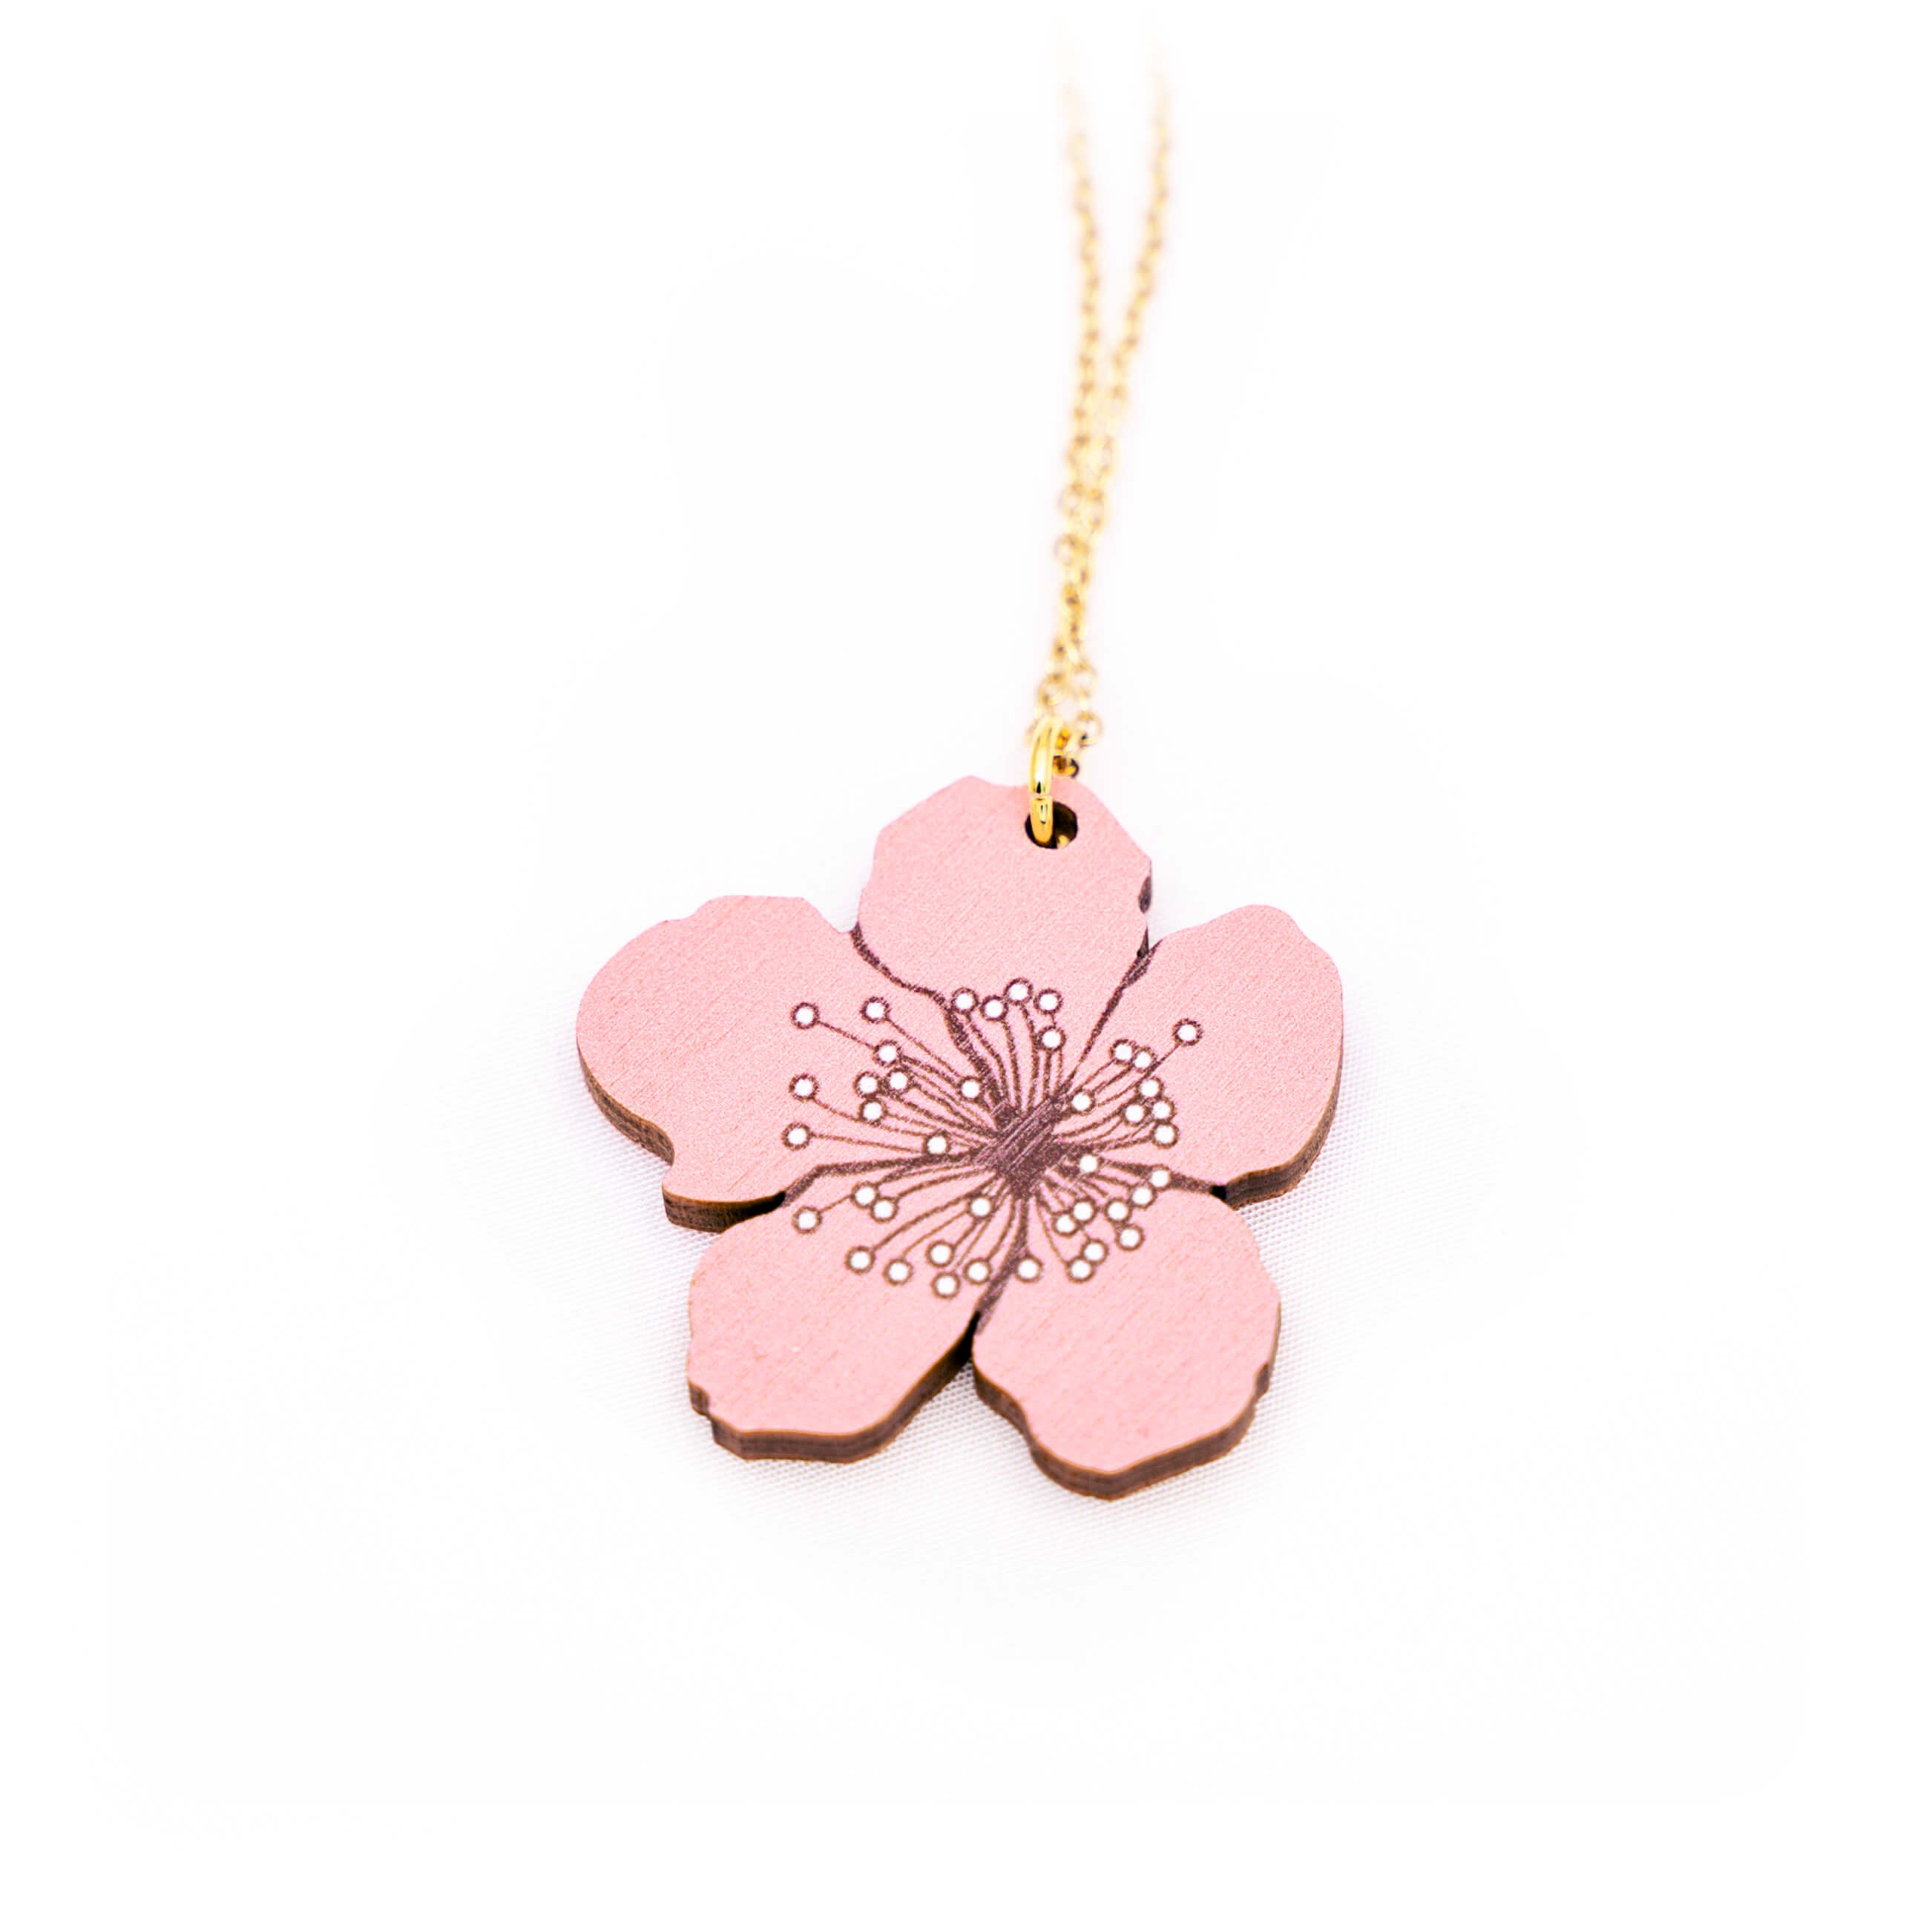 Kaunis sakura kaulakoru. Sakura (桜) tarkoittaa japaninkielellä kirsikankukkaa ja se symboloi uuden alkua ja elämän katoavaisuudessa piilevää kauneutta. Tämä kaunis sakura viimeistelee niin arki- kuin juhlailmeen. Japanilaisessa kukkien kielessä, eli hanakotobassa, kirsikankukat symboloivat puhdasta ja lempeää sydäntä. Kuvittele, miten kaunis ele olisi antaa tämä jollekin lahjaksi, sillä tämä sakura kaulakoru asettuu lähelle sydäntä. Käsintehty Suomessa.